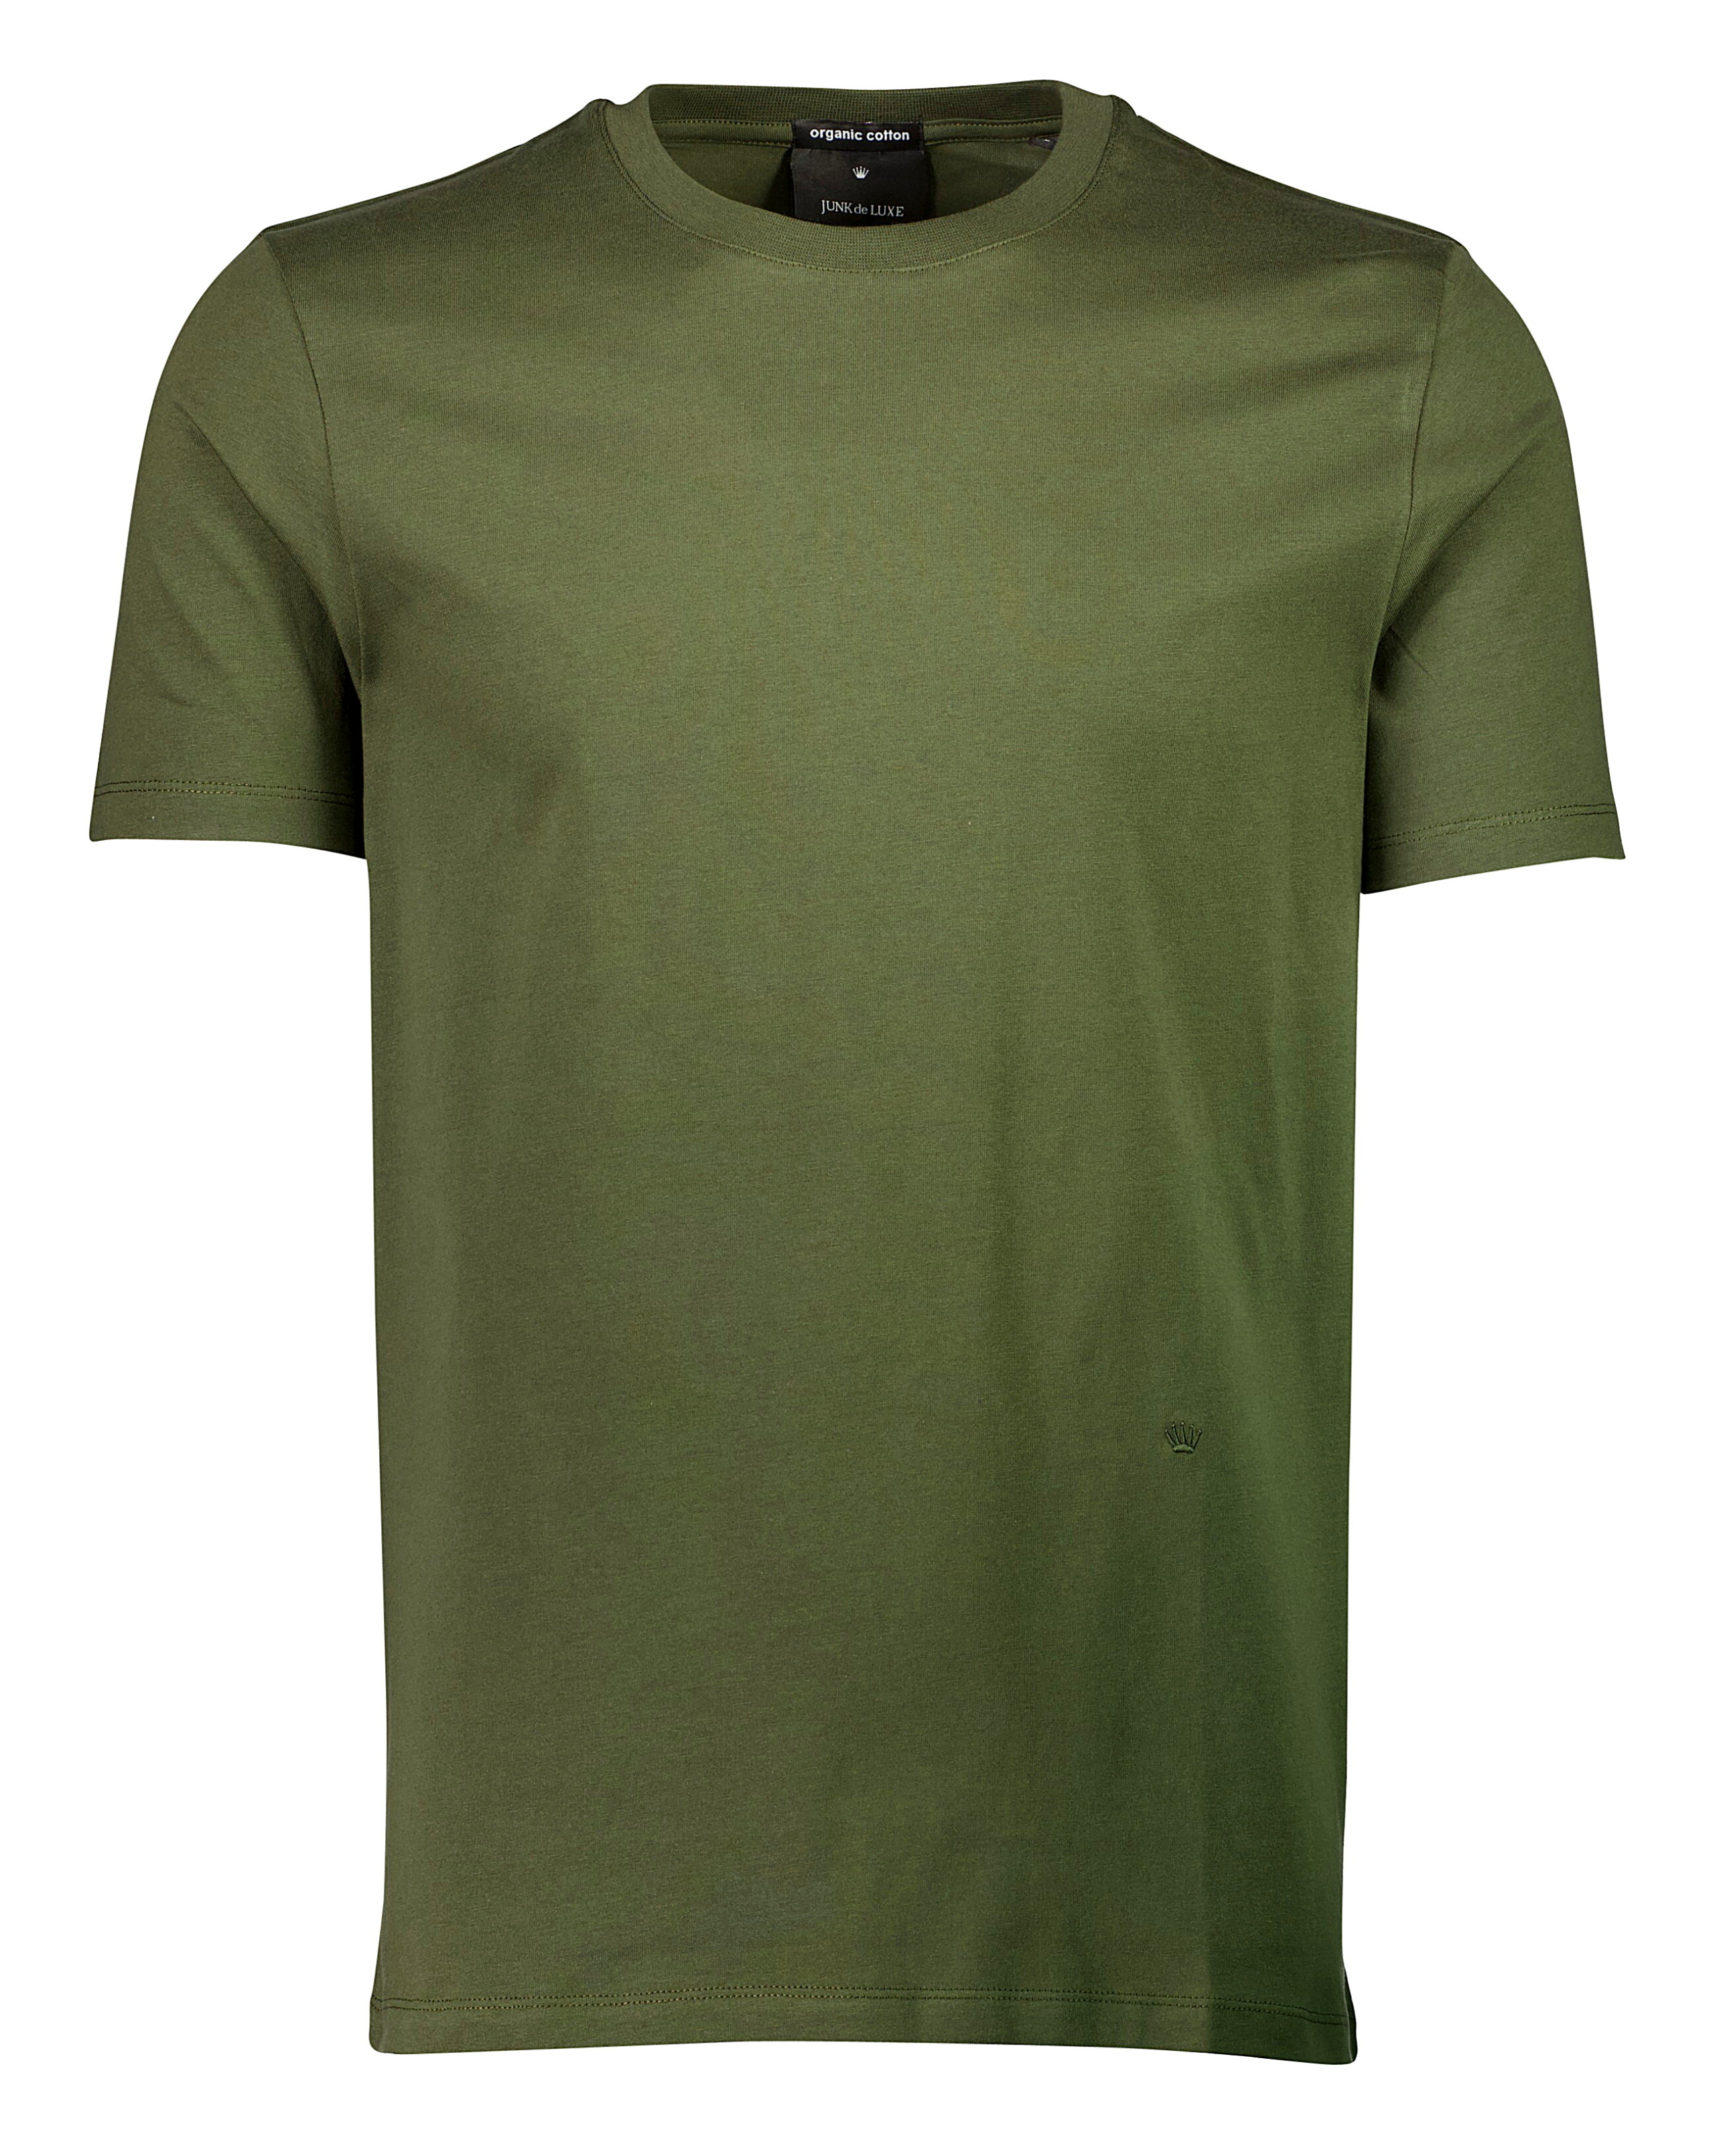 Junk de Luxe T-shirt grøn / army